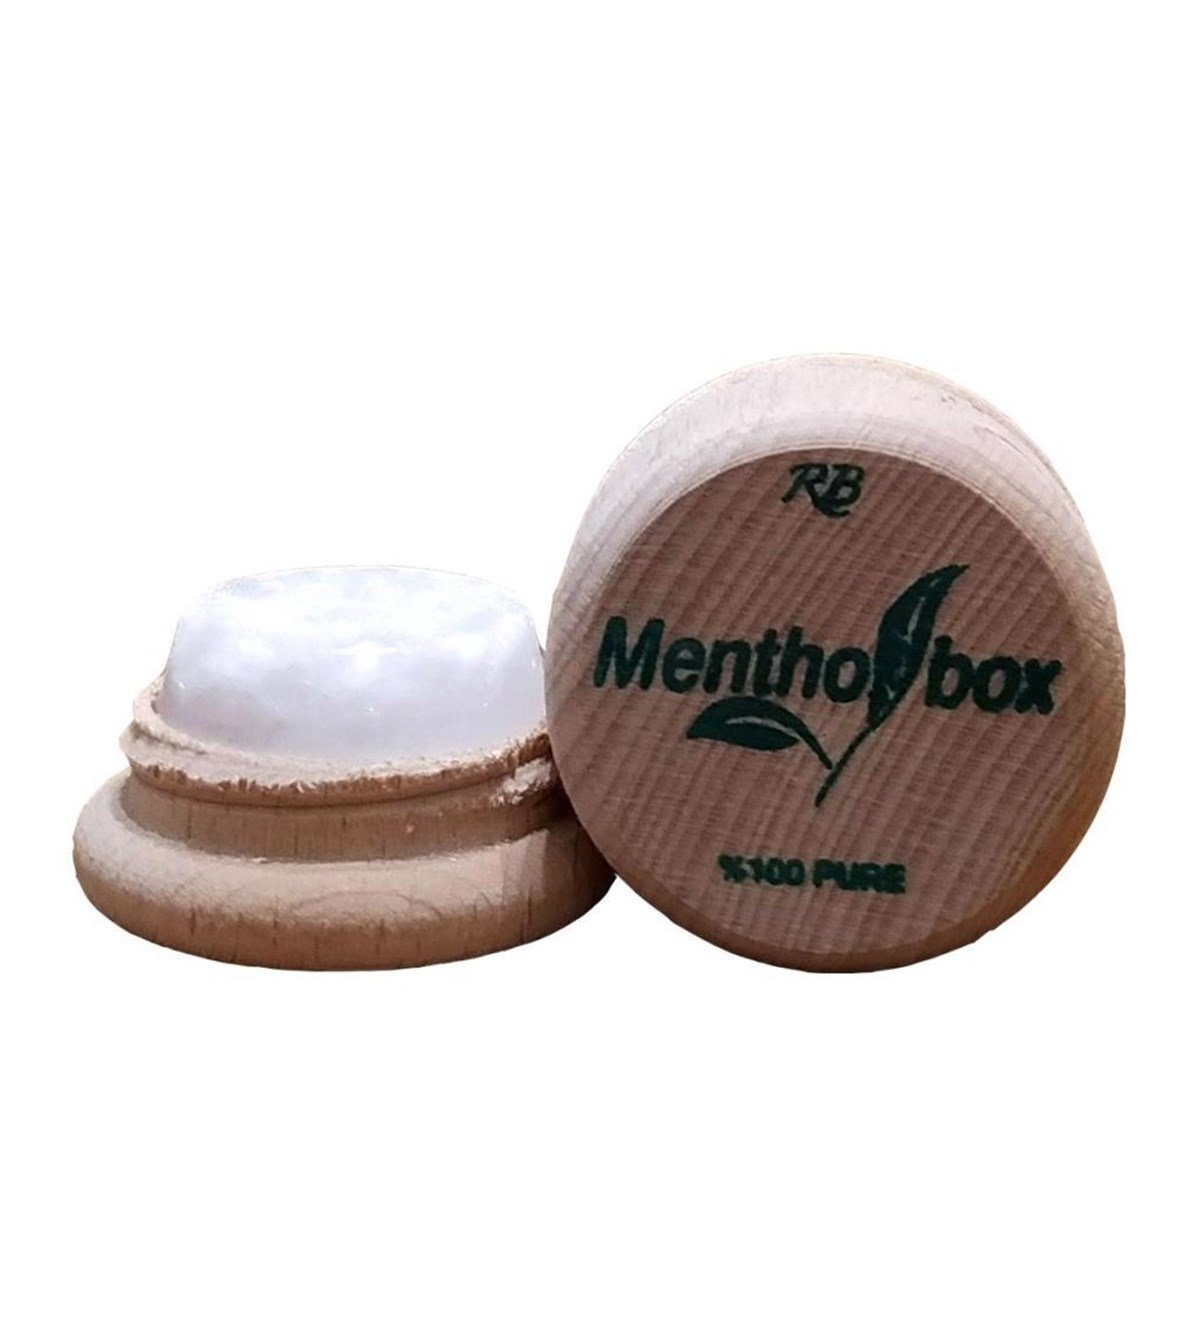 Mentholbox Nemlendirici Masaj Kremi (Migren Taşı) 6 gr DepoEczanem.com |  Dermokozmetik Cilt & Vücut Bakımı, Vitamin & Mineral – Takviye Edici Gıda  ve Reçetesiz Sağlık Ürünleri